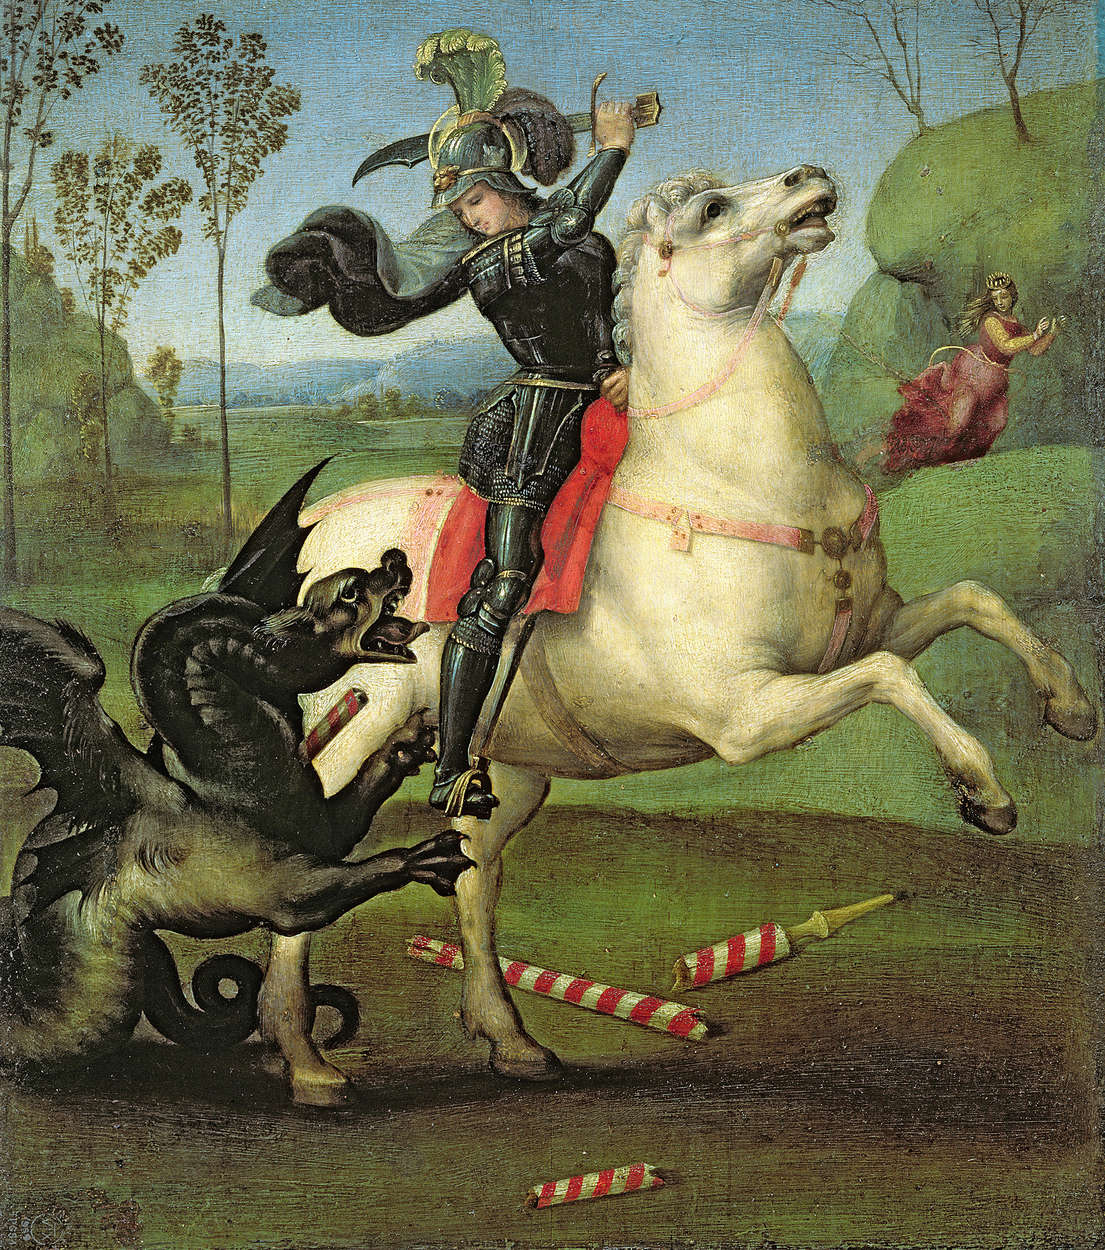             Sint Joris vecht tegen de draak" muurschildering door Rafaël
        